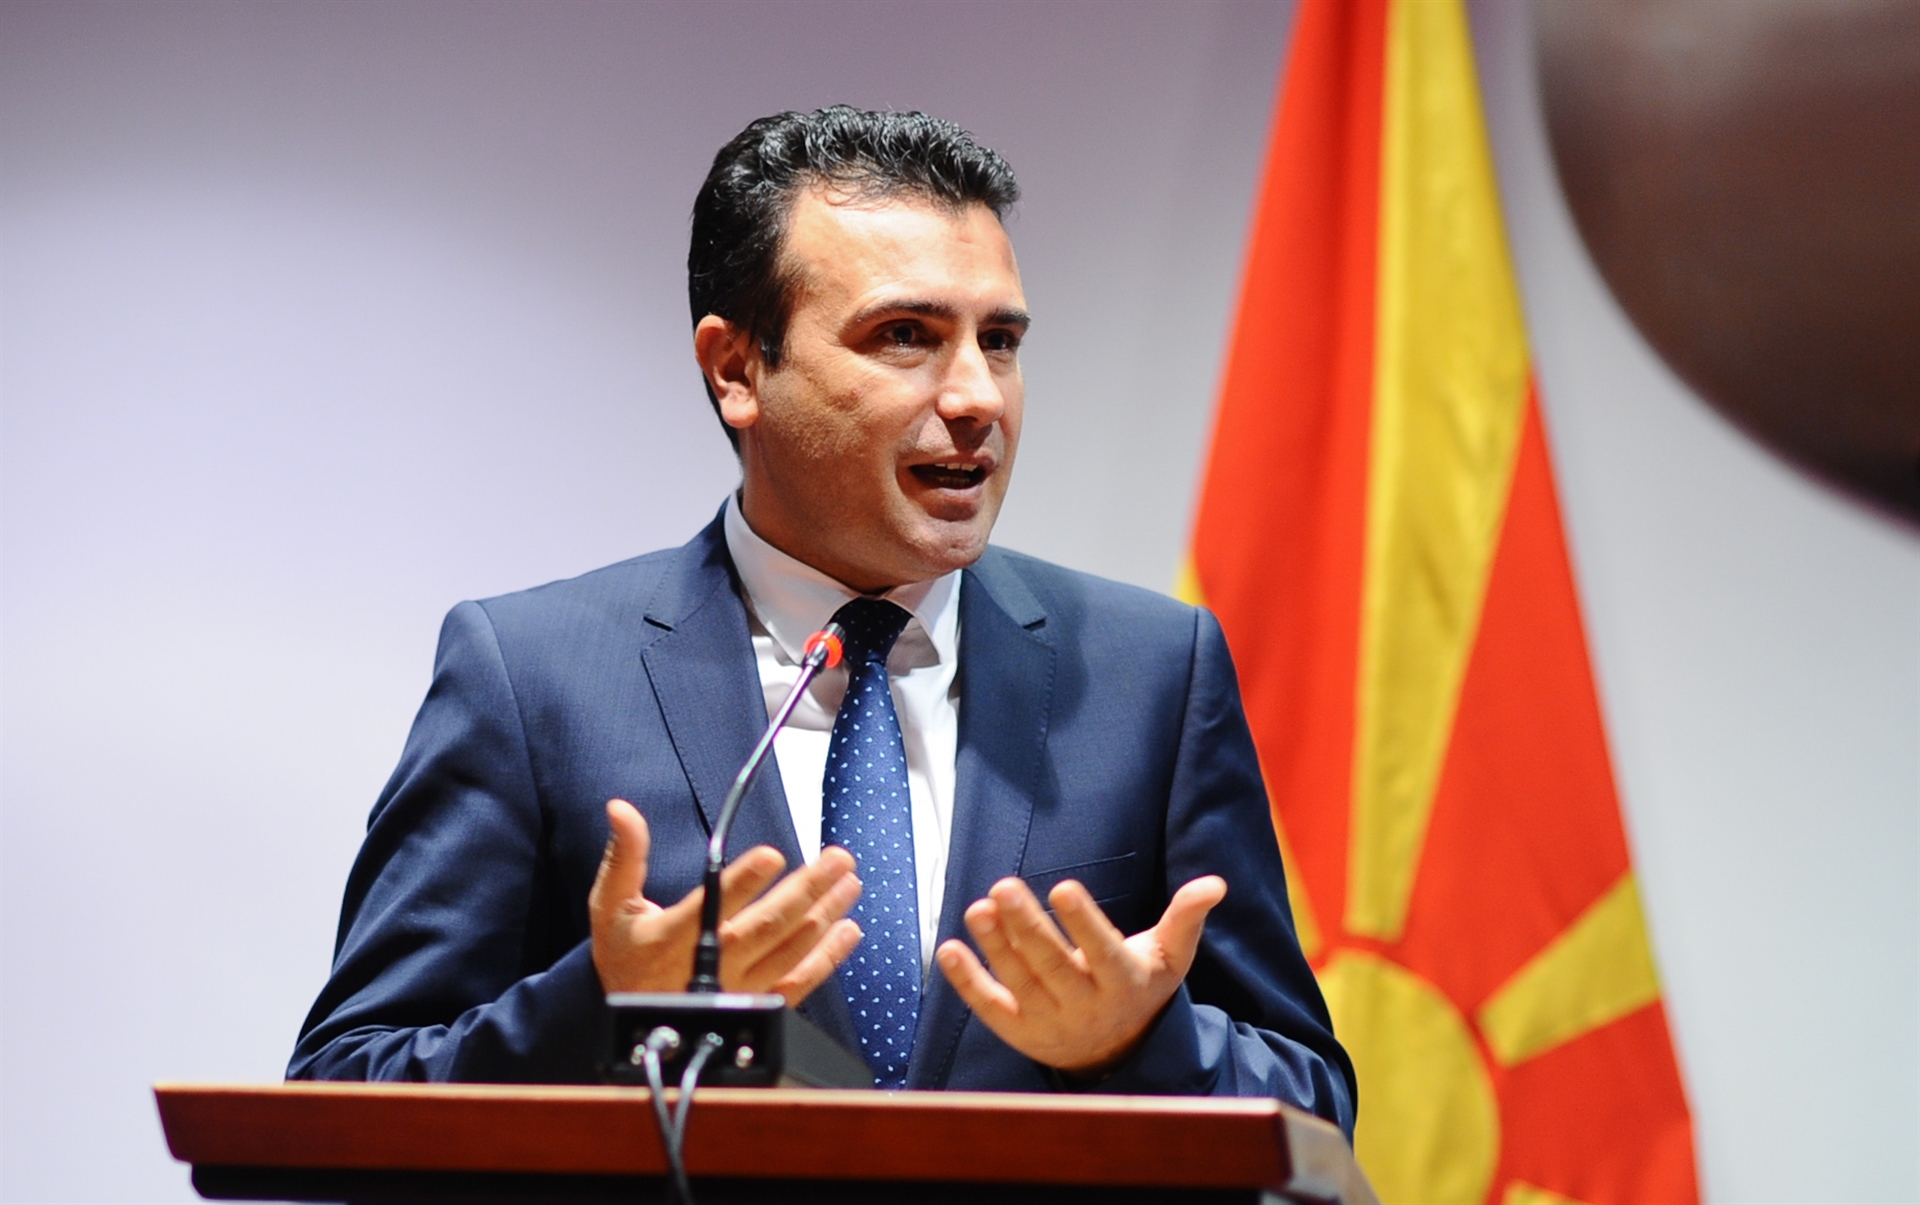 Ζ.Ζάεφ: «Η “Μακεδονία” μας, θα έχει ίση ψήφο με ΗΠΑ, Βρετανία, Γερμανία στο ΝΑΤΟ χάρις τον Α.Τσίπρα»